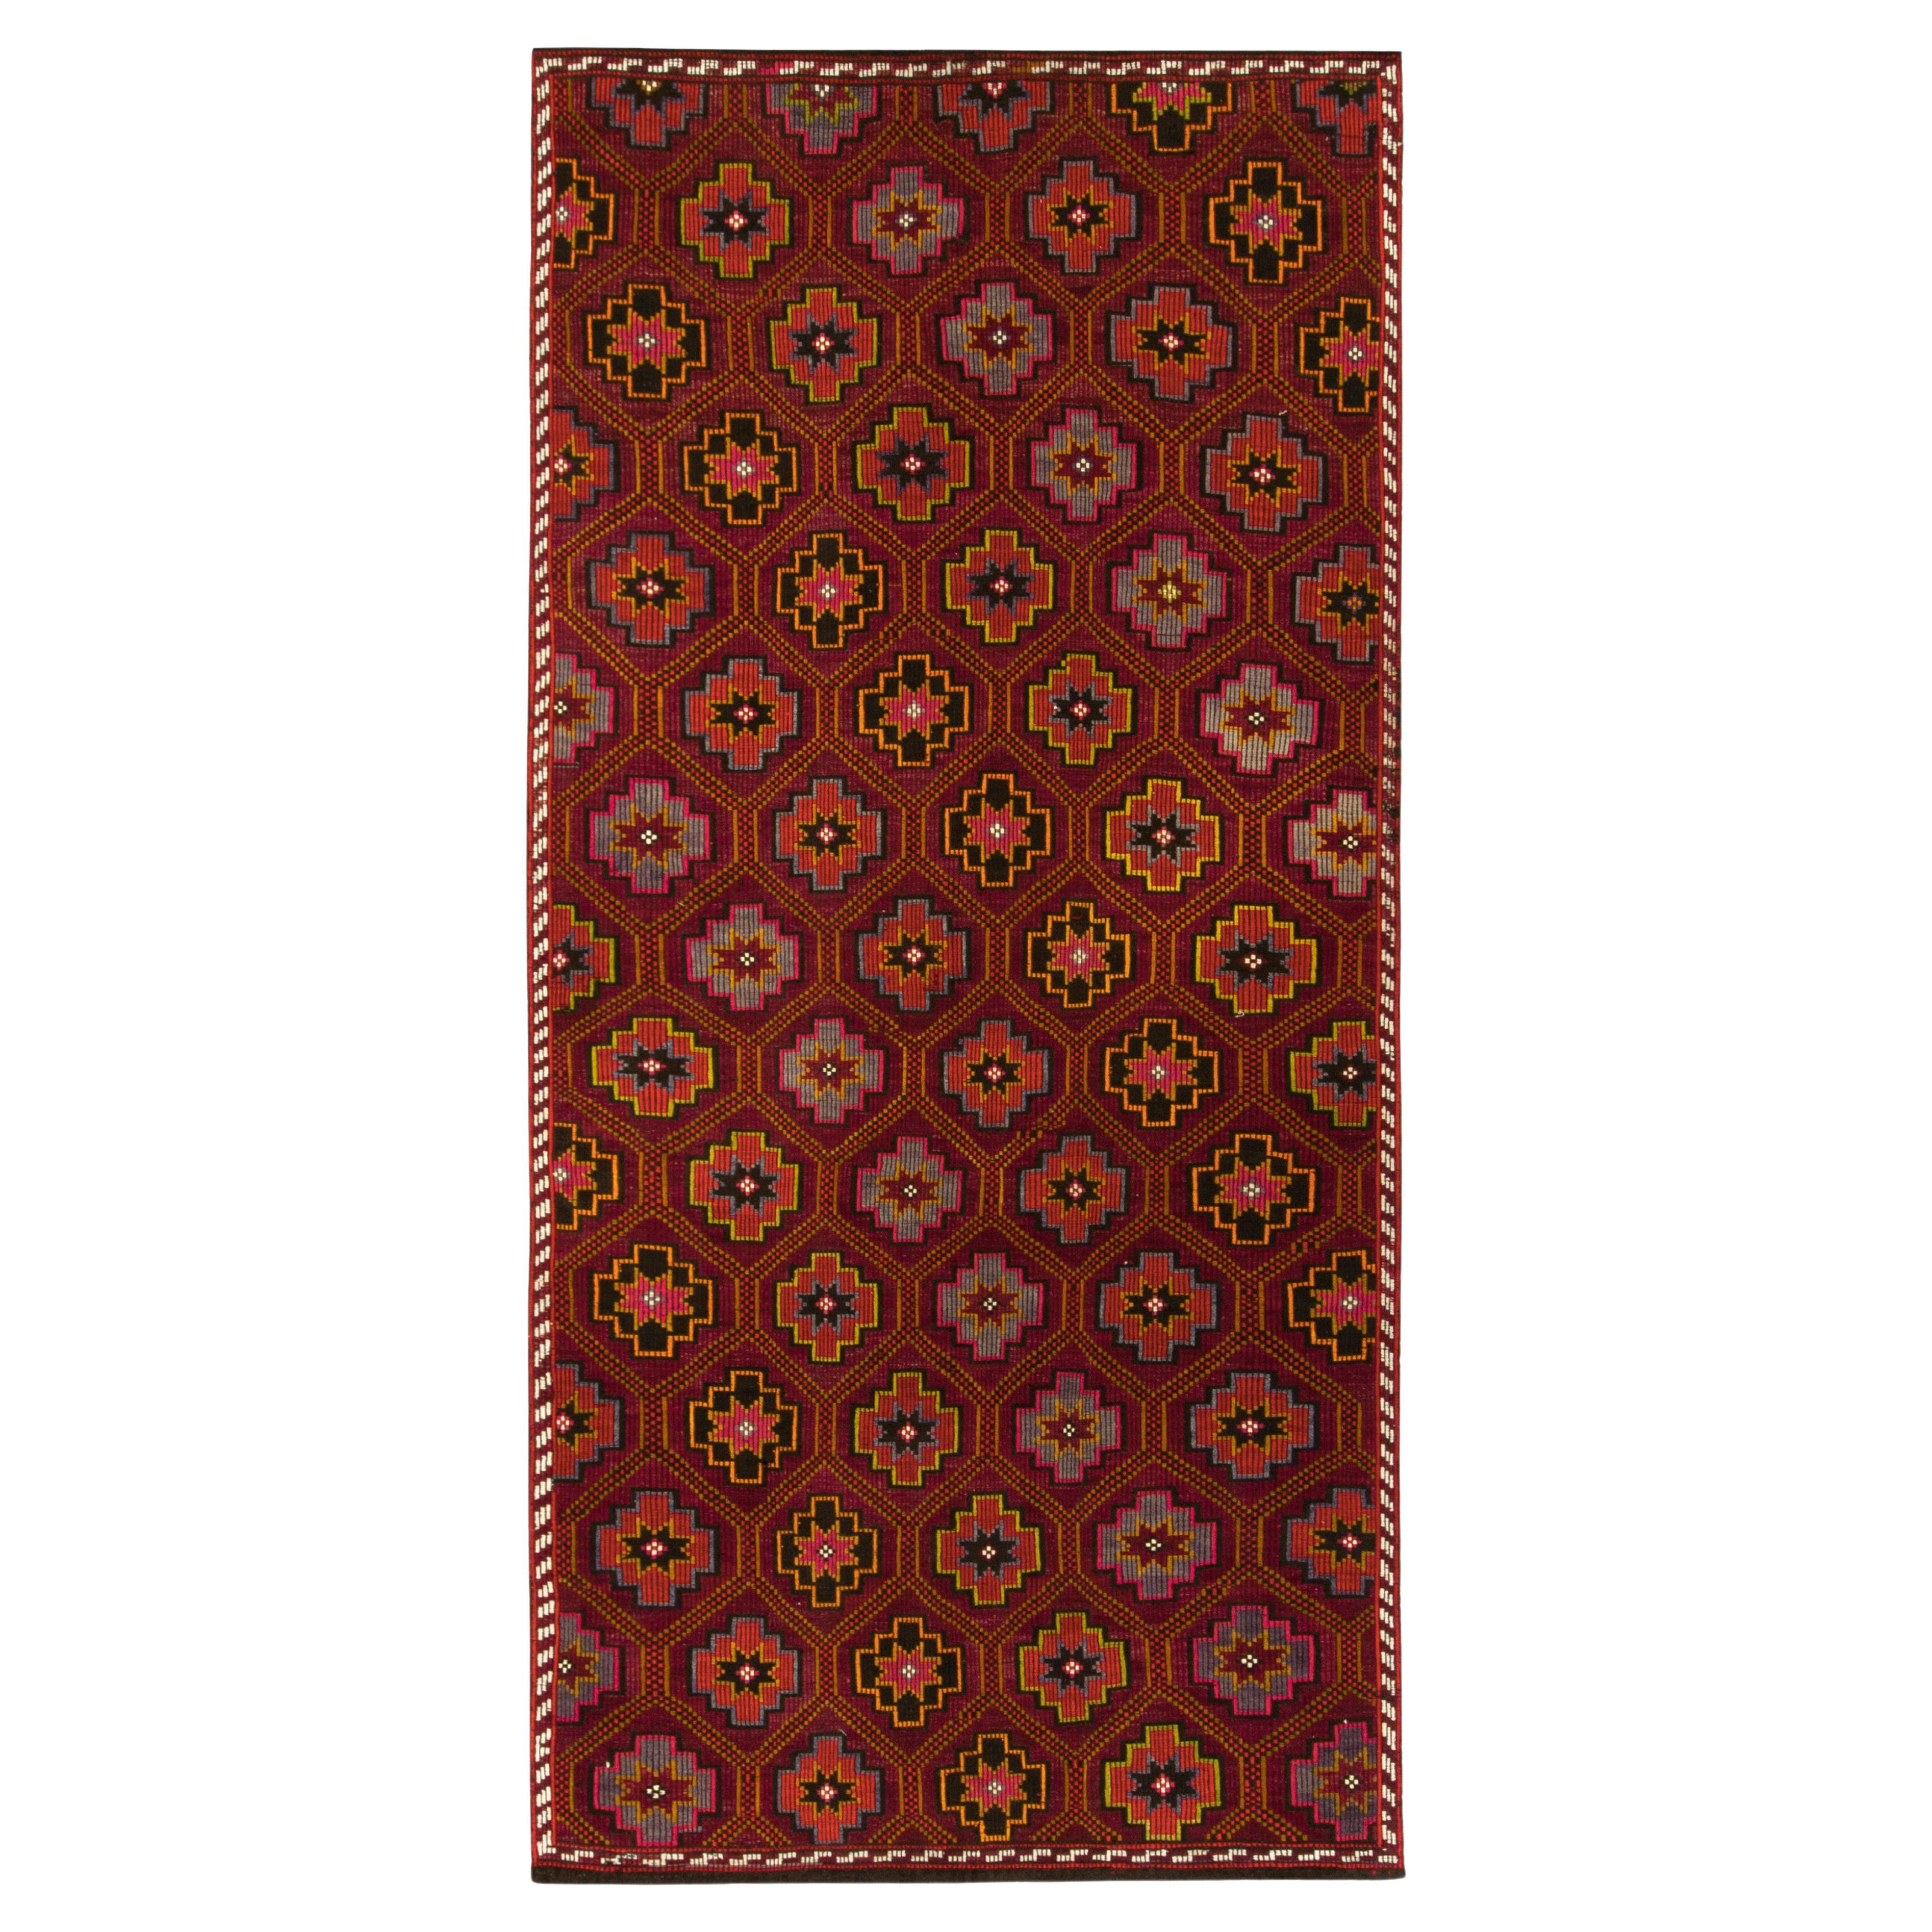 Vintage Chaput Kilim Rug in Red, Gold & Brown Geometric Patterns by Rug & Kilim